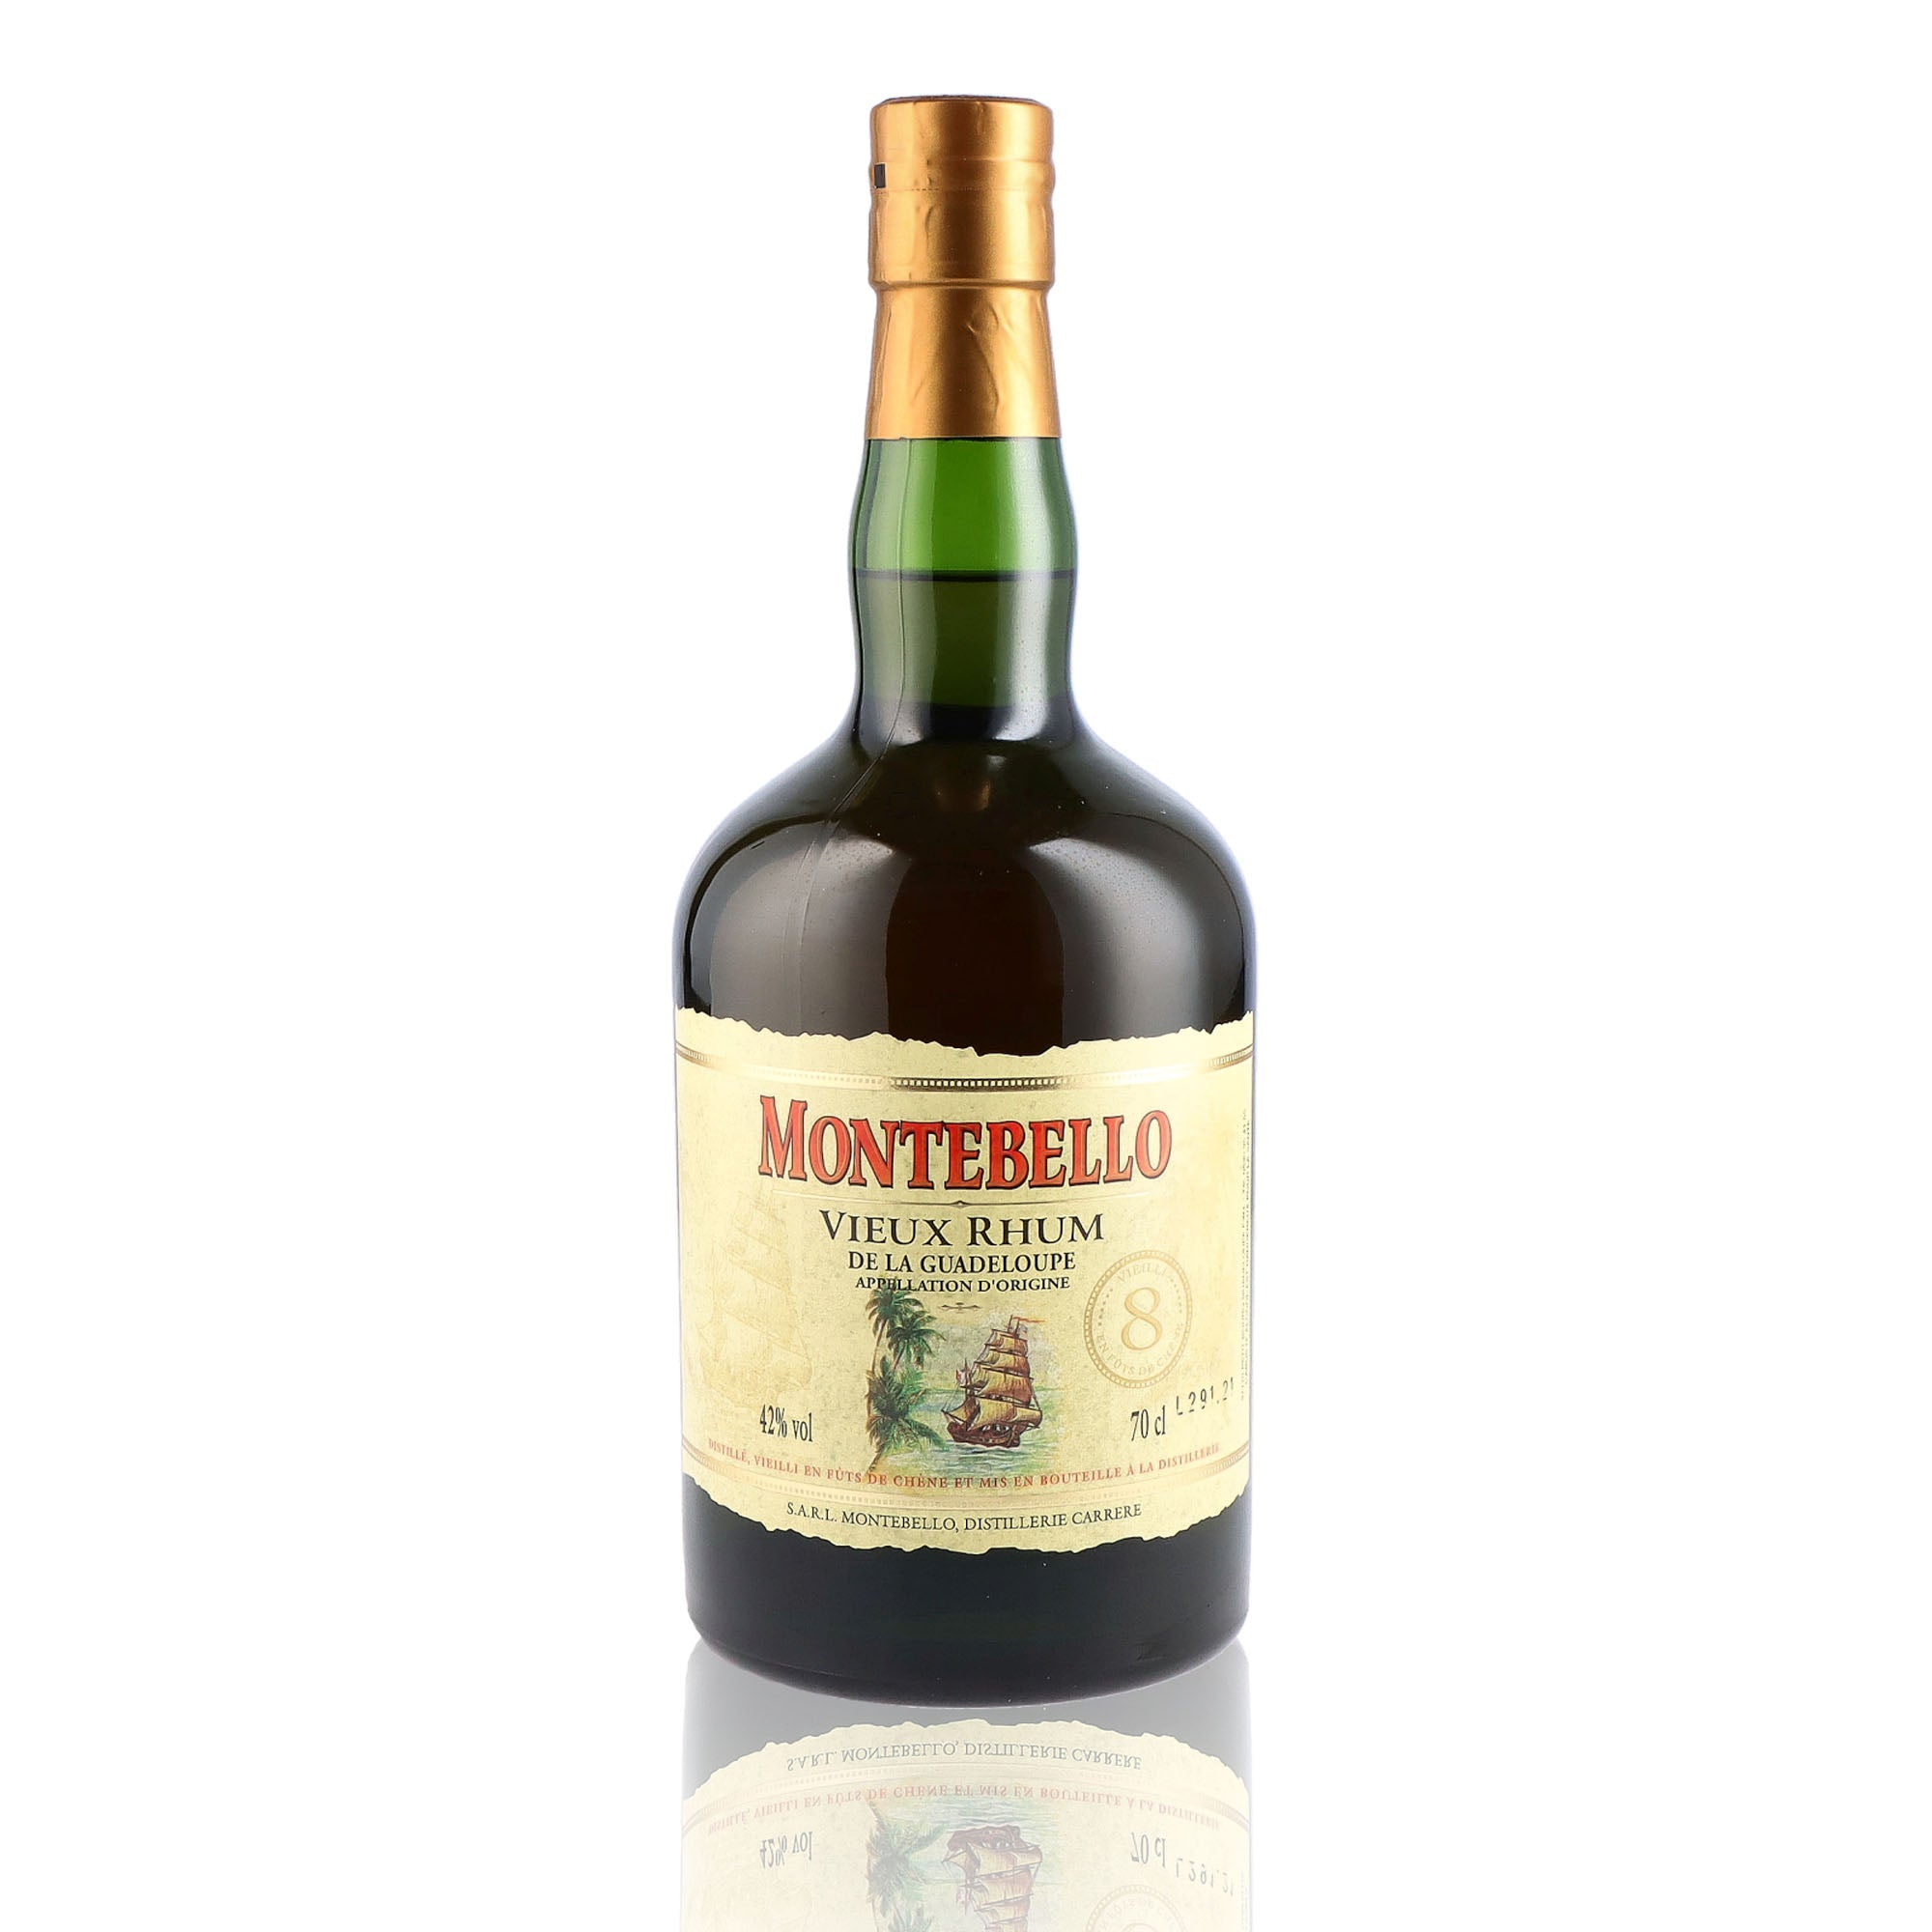 Une bouteille de rhum vieux, de la marque Montebello, 8 ans d'âge.